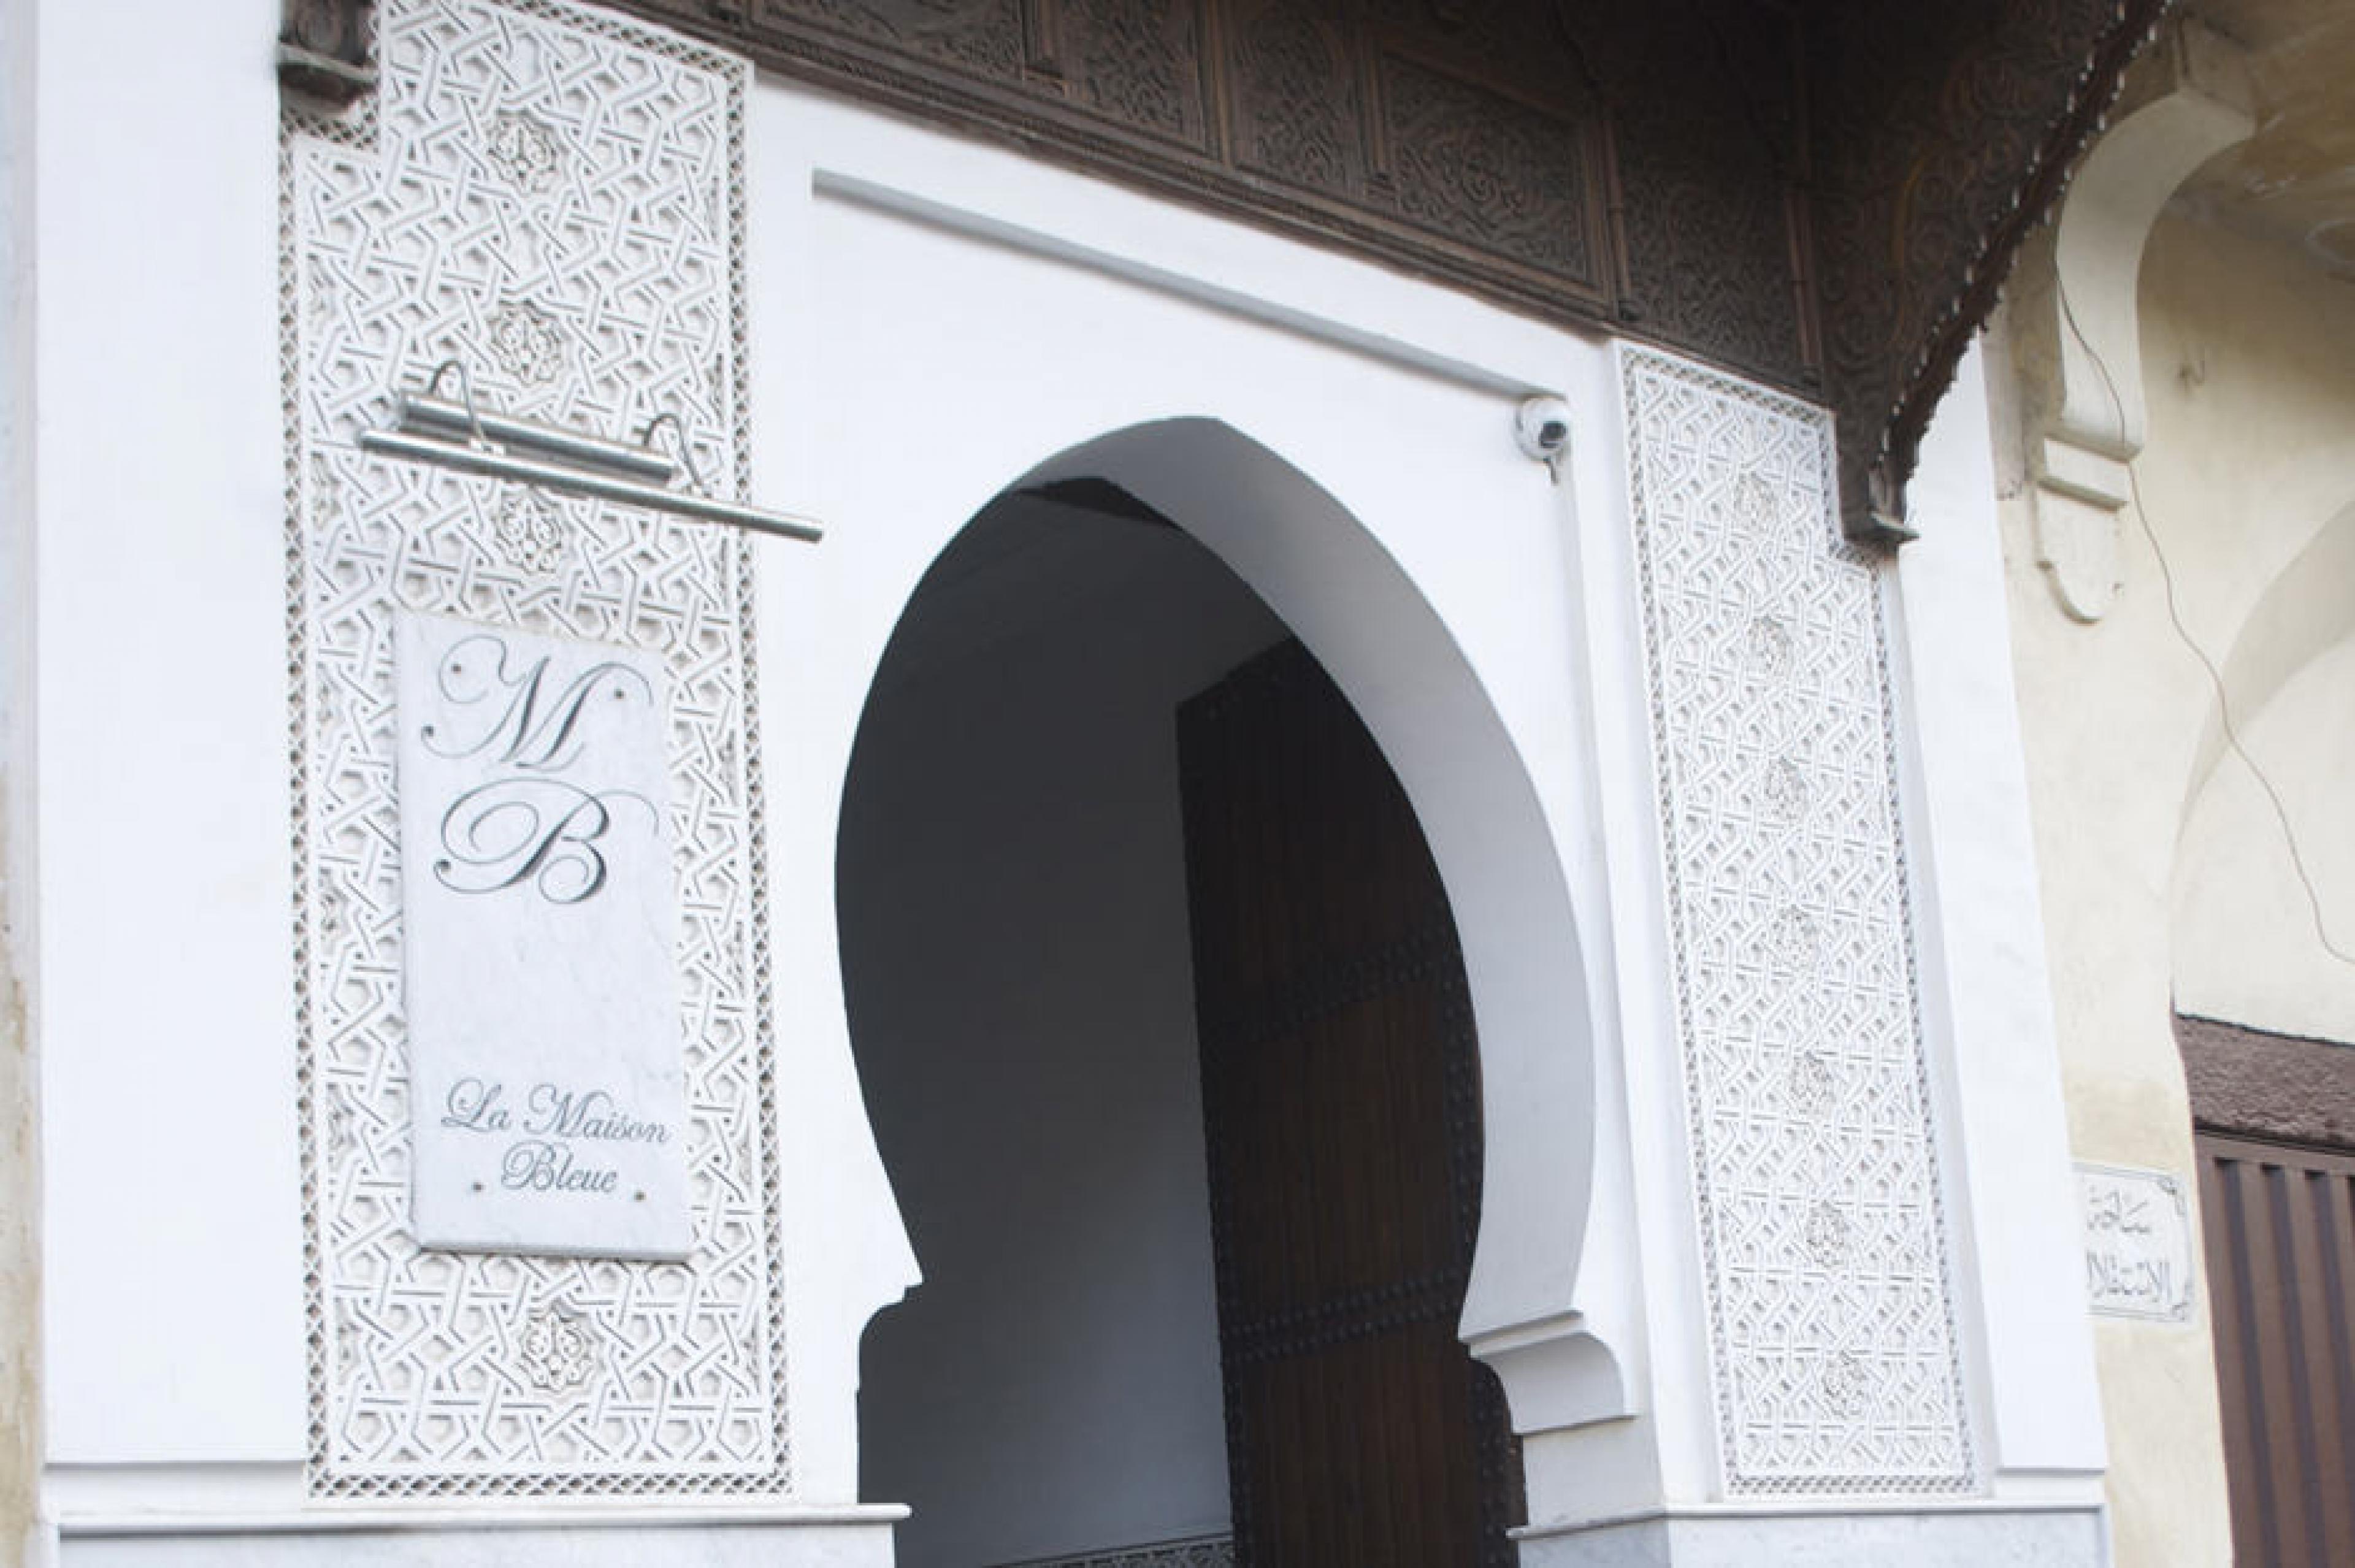 Entrance at La Maison Bleue,  Fez, Morocco